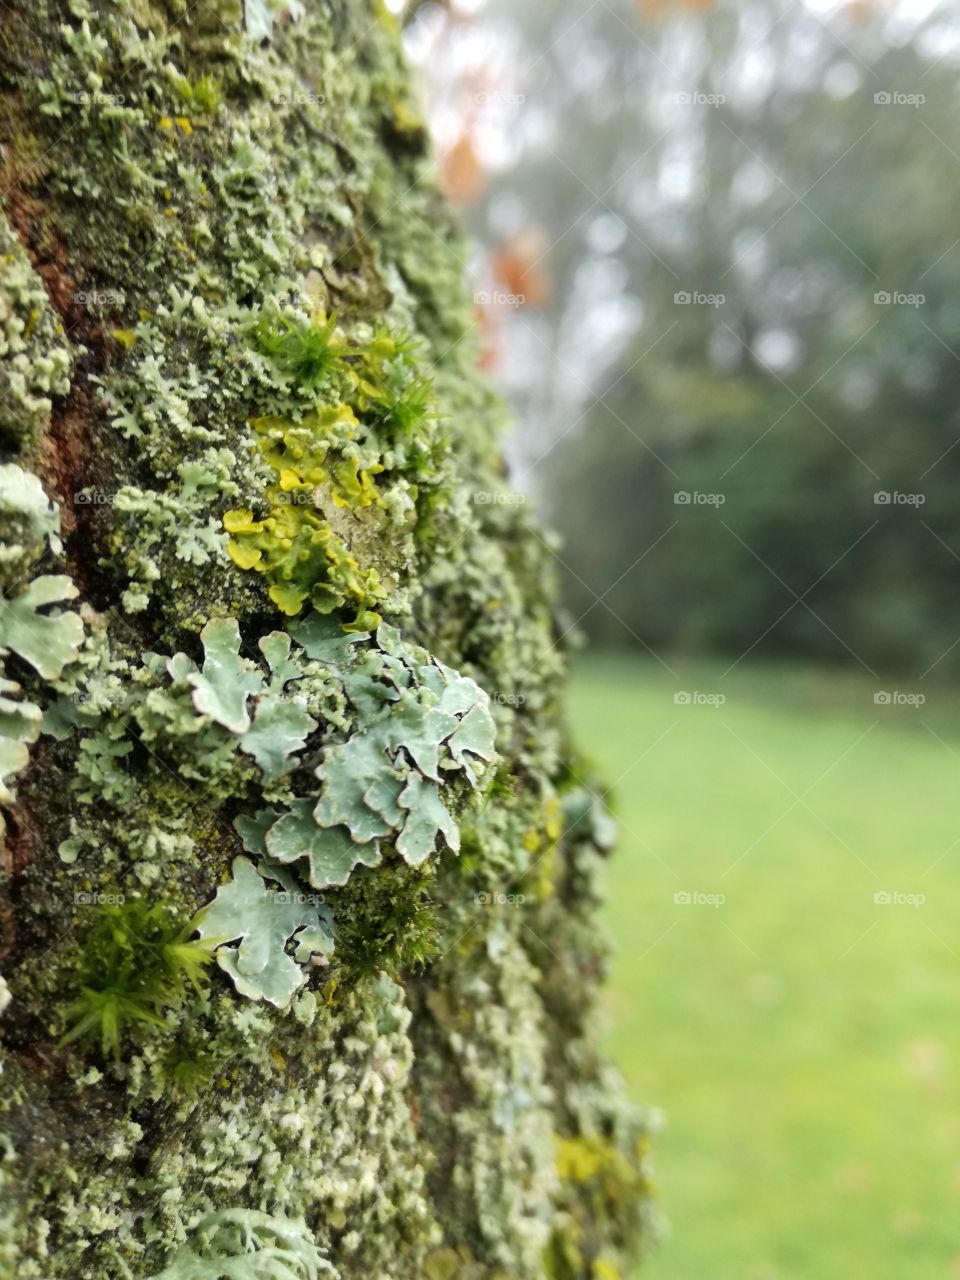 lichen on tree